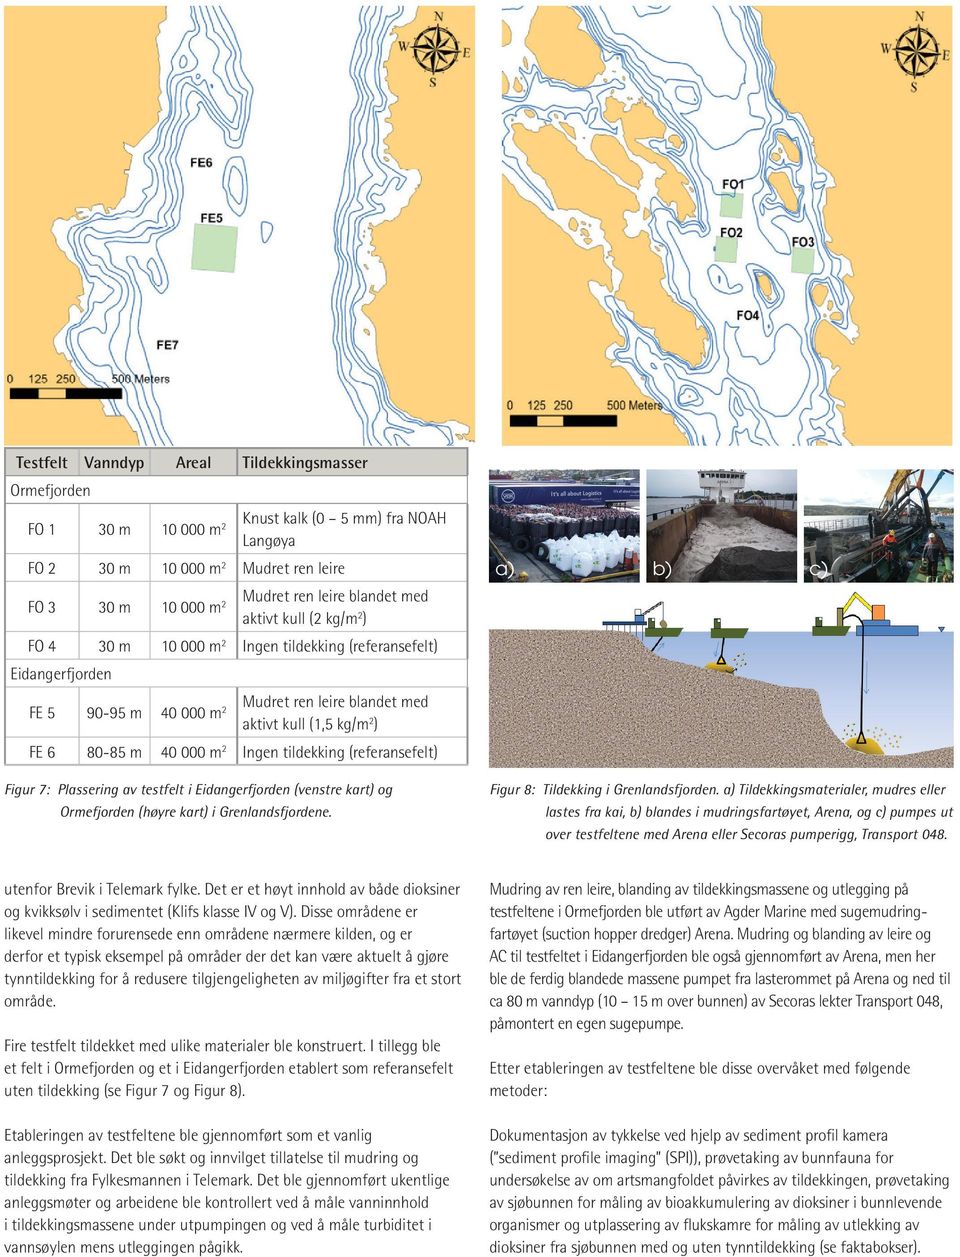 m2 Ingen tildekking (referansefelt) Figur 7: Plassering av testfelt i Eidangerfjorden (venstre kart) og Ormefjorden (høyre kart) i Grenlandsfjordene. Figur 8: Tildekking i Grenlandsfjorden.